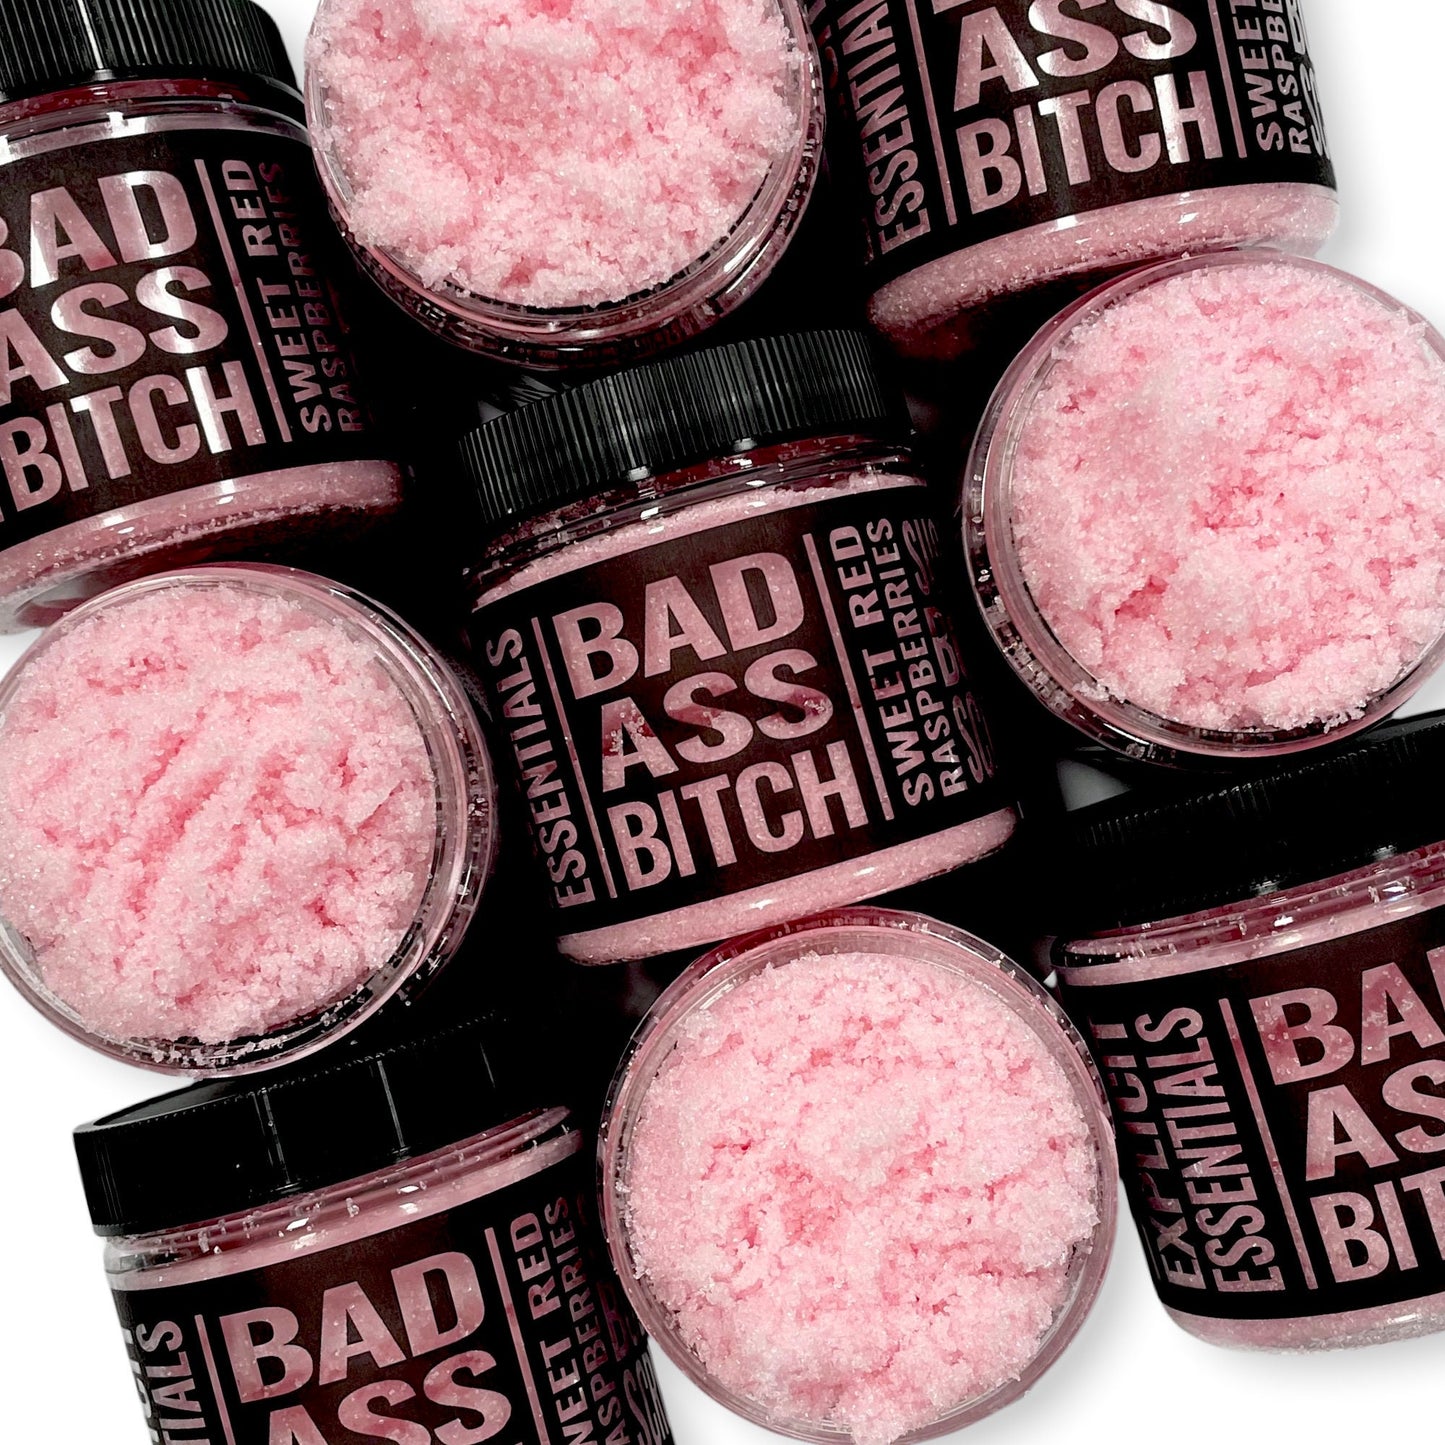 Bad Ass Bitch Sugar Scrub